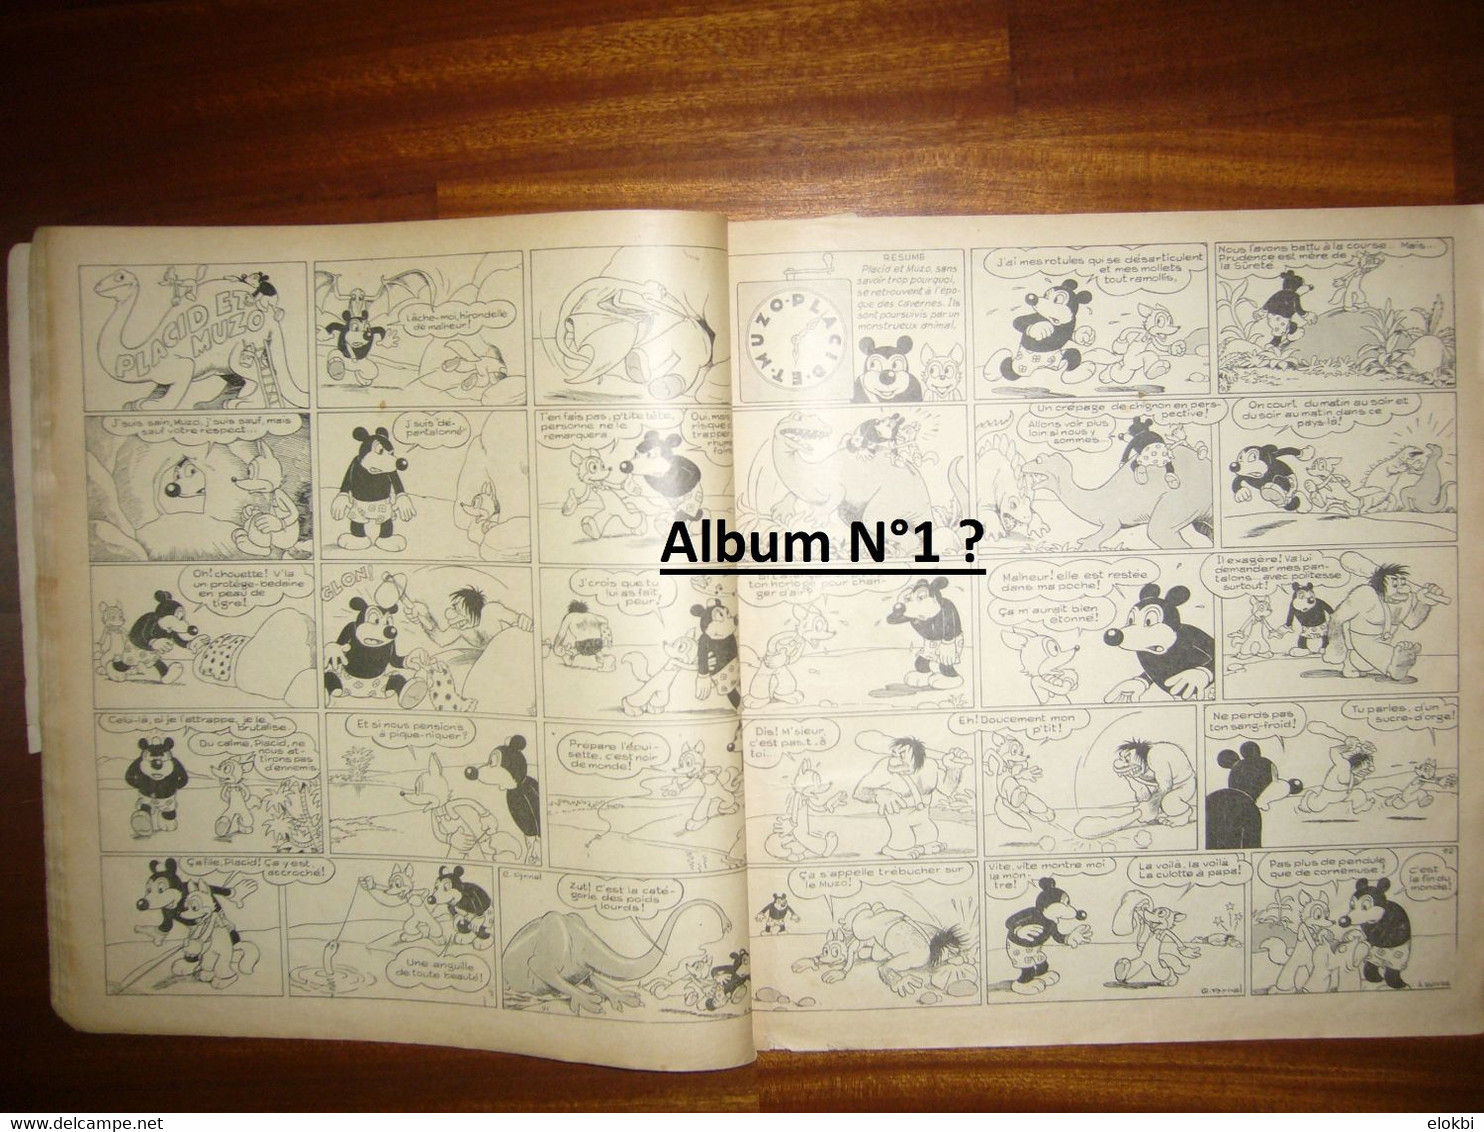 Les aventures de Placid et Muzo - Lot composé par la série des numéros 3 à 11 - Editions Vaillant 1952 - 1962